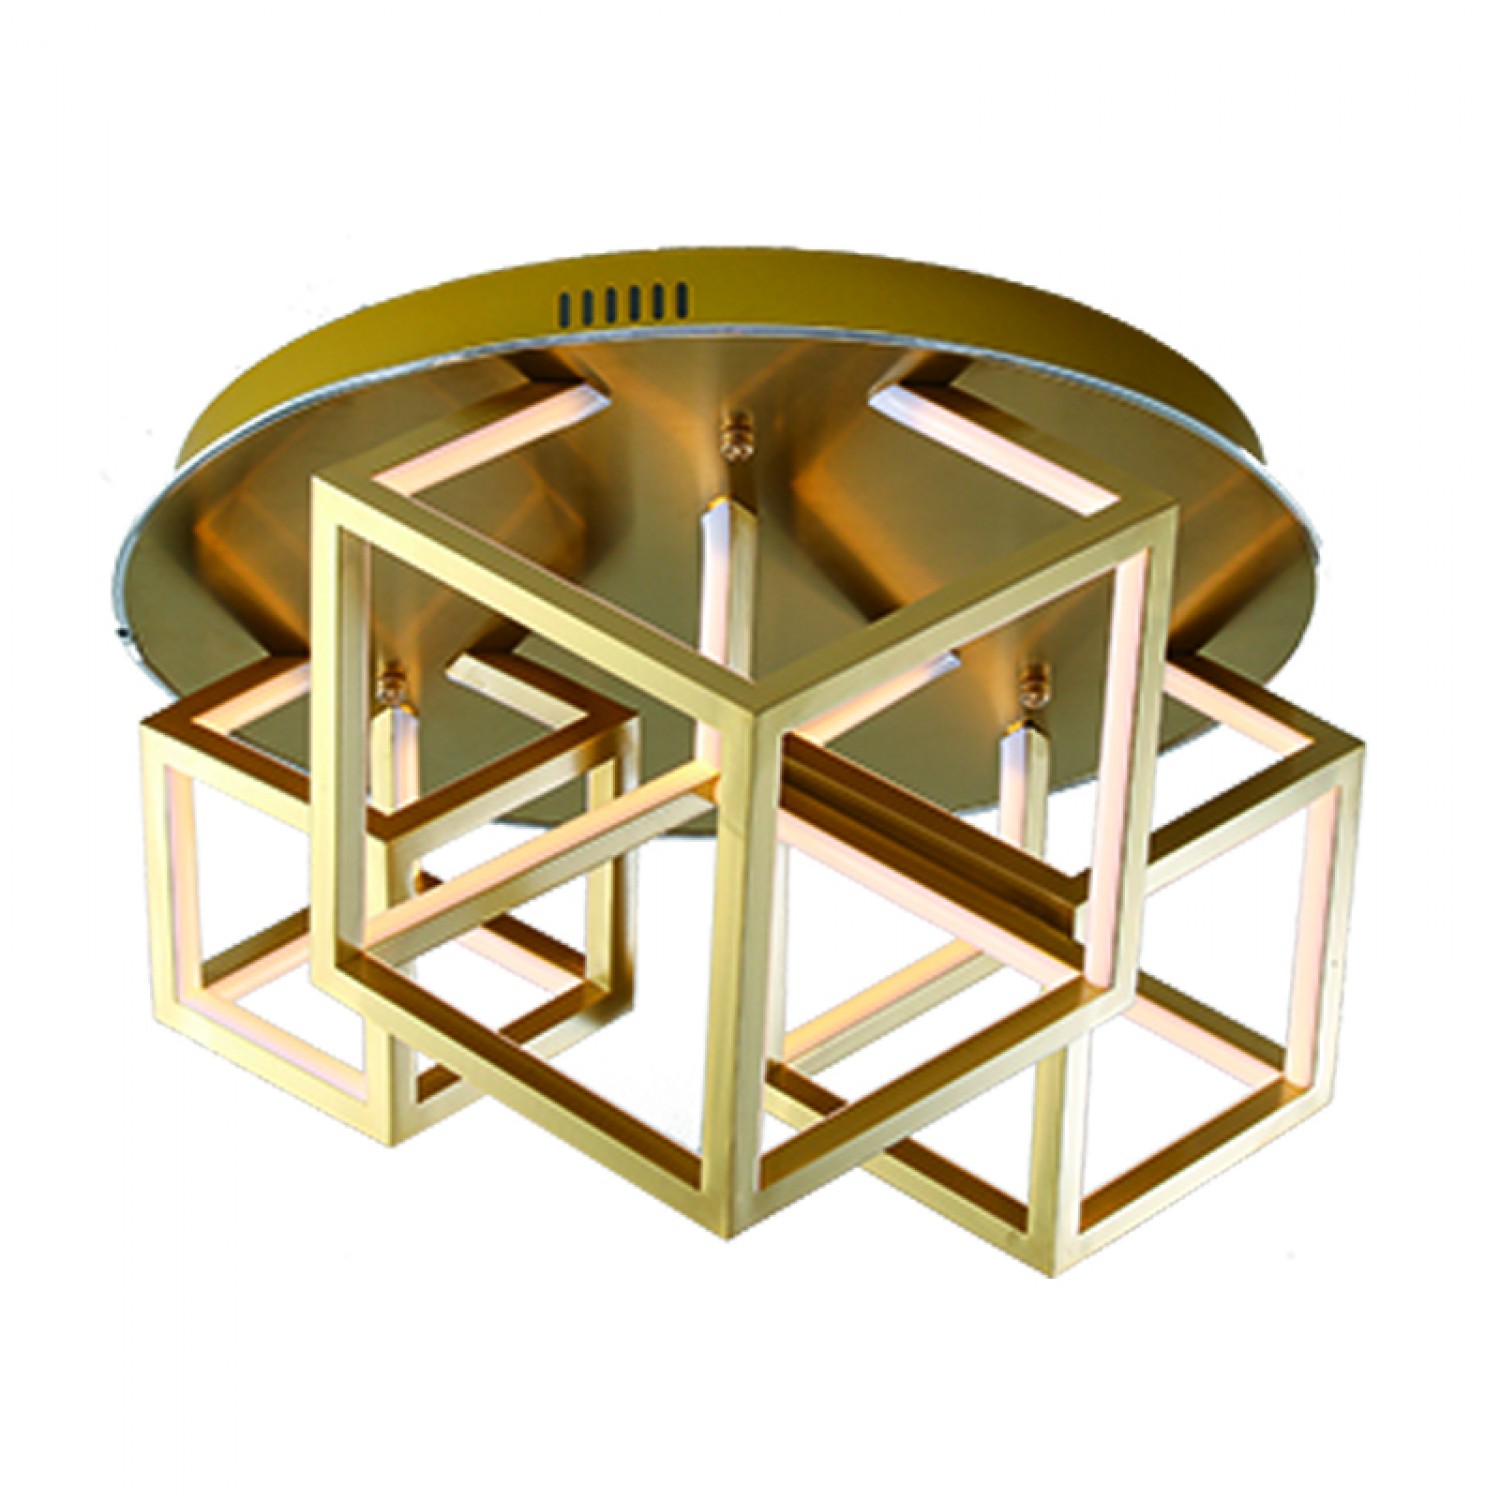 Φωτιστικό οροφής από αλουμίνιο σε χρυσή ματ απόχρωση (6147-80-Χρυσό Ματ) Φωτιστικά